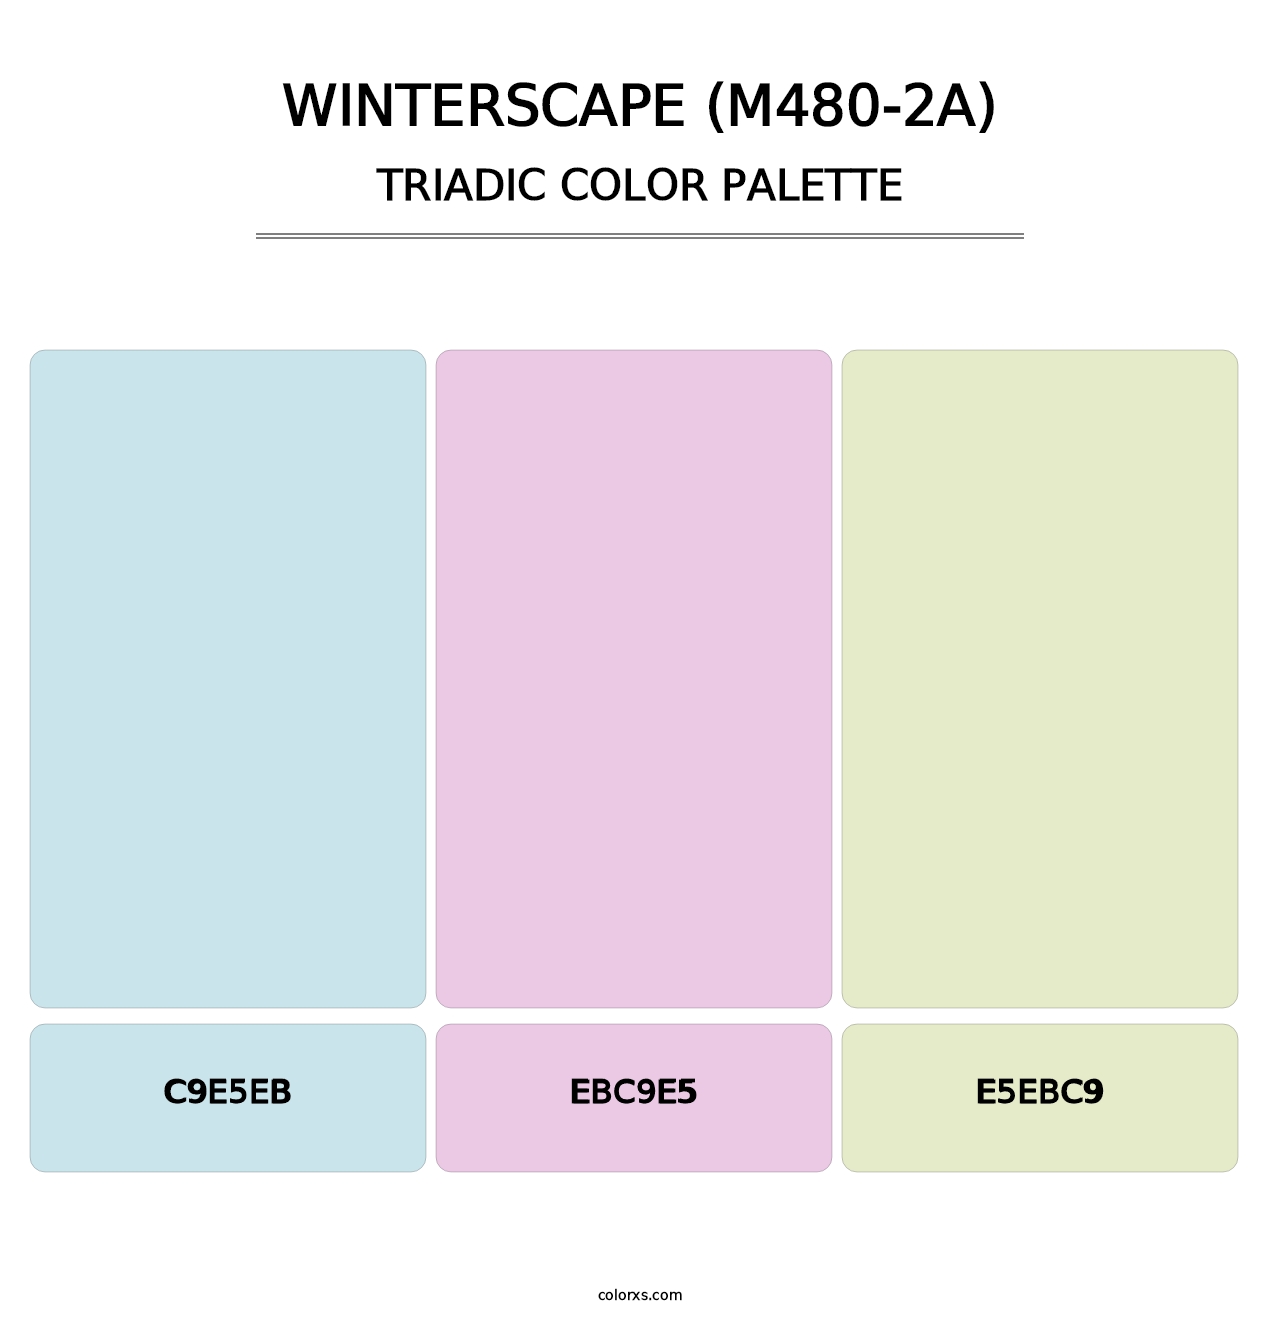 Winterscape (M480-2A) - Triadic Color Palette